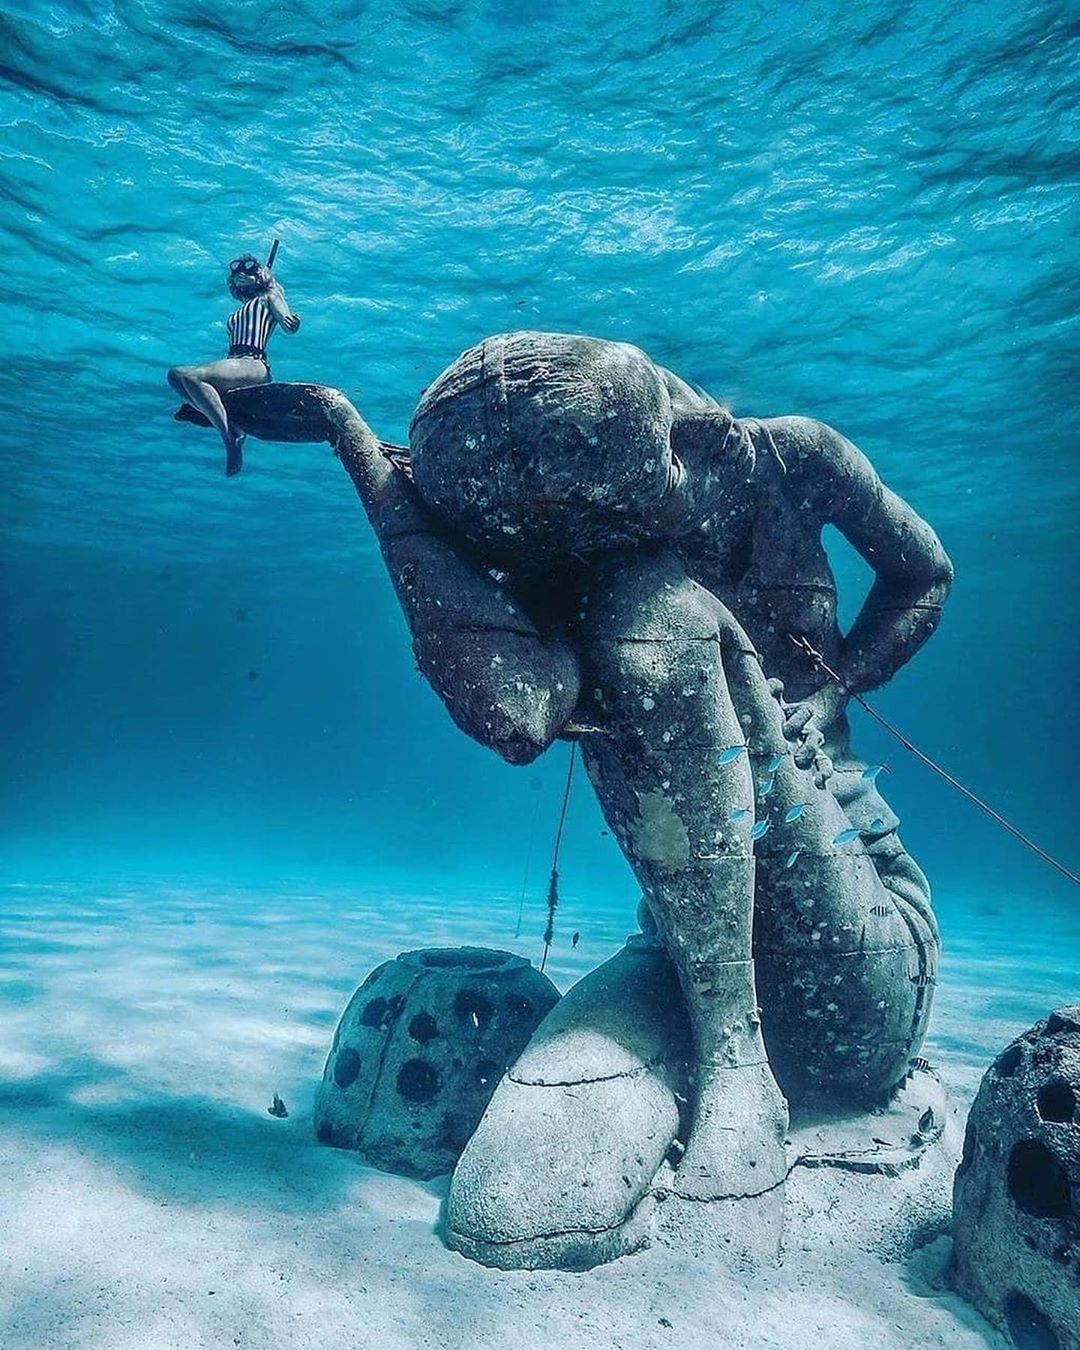 GISMETEO: Океанский Атлант: удивительная подводная статуя на Багамах - Природа | Новости погоды.